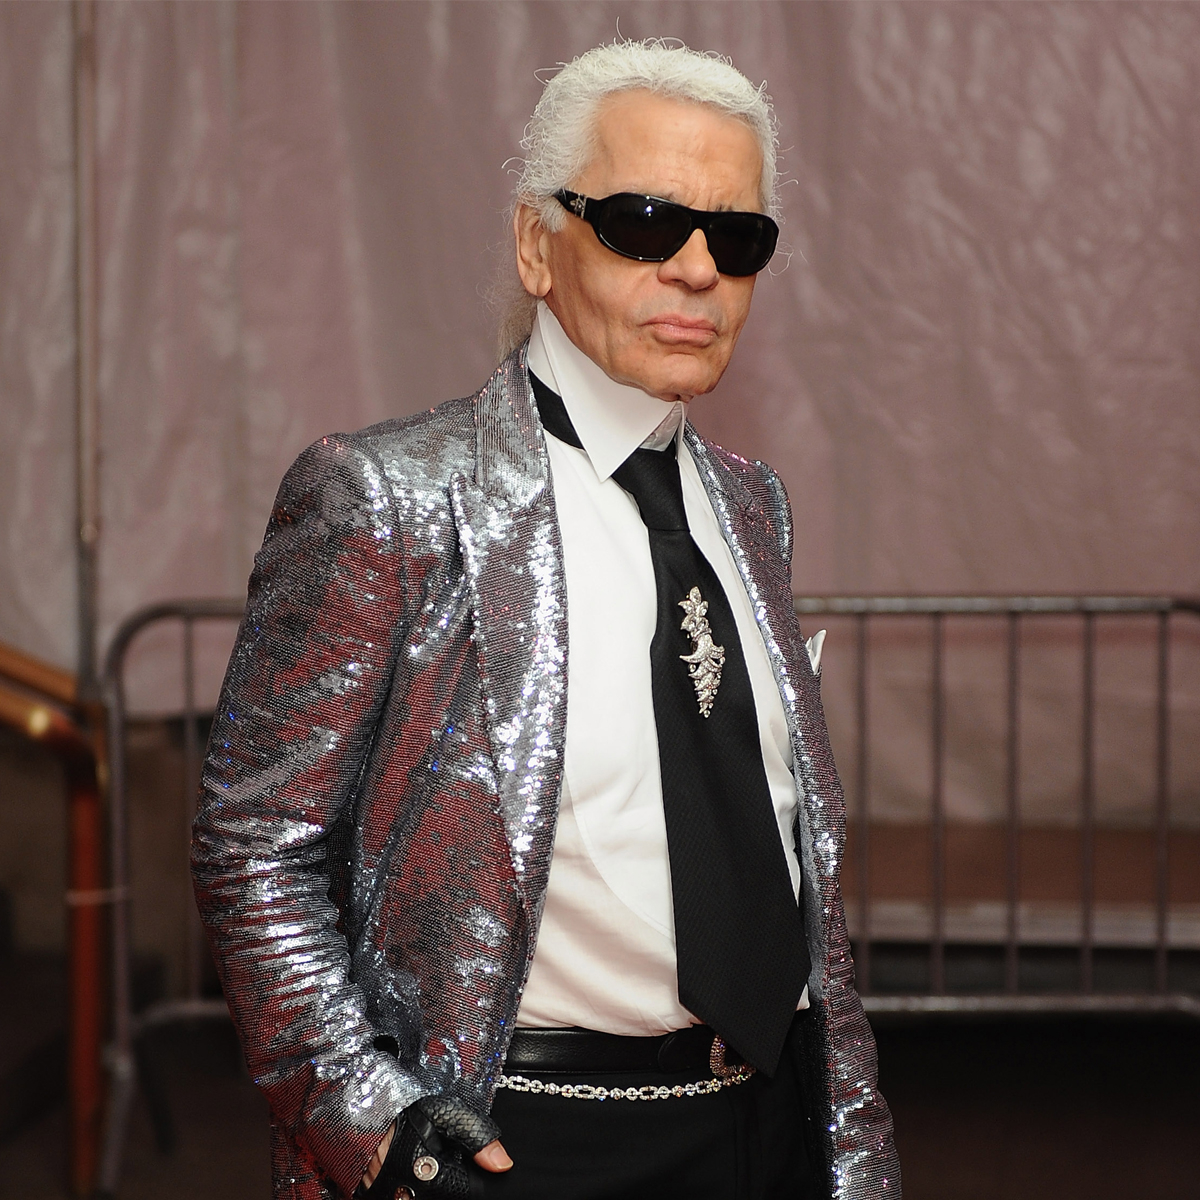 Explore Karl Lagerfeld's Career Timeline Ahead of 2023 Met Gala - InStyle